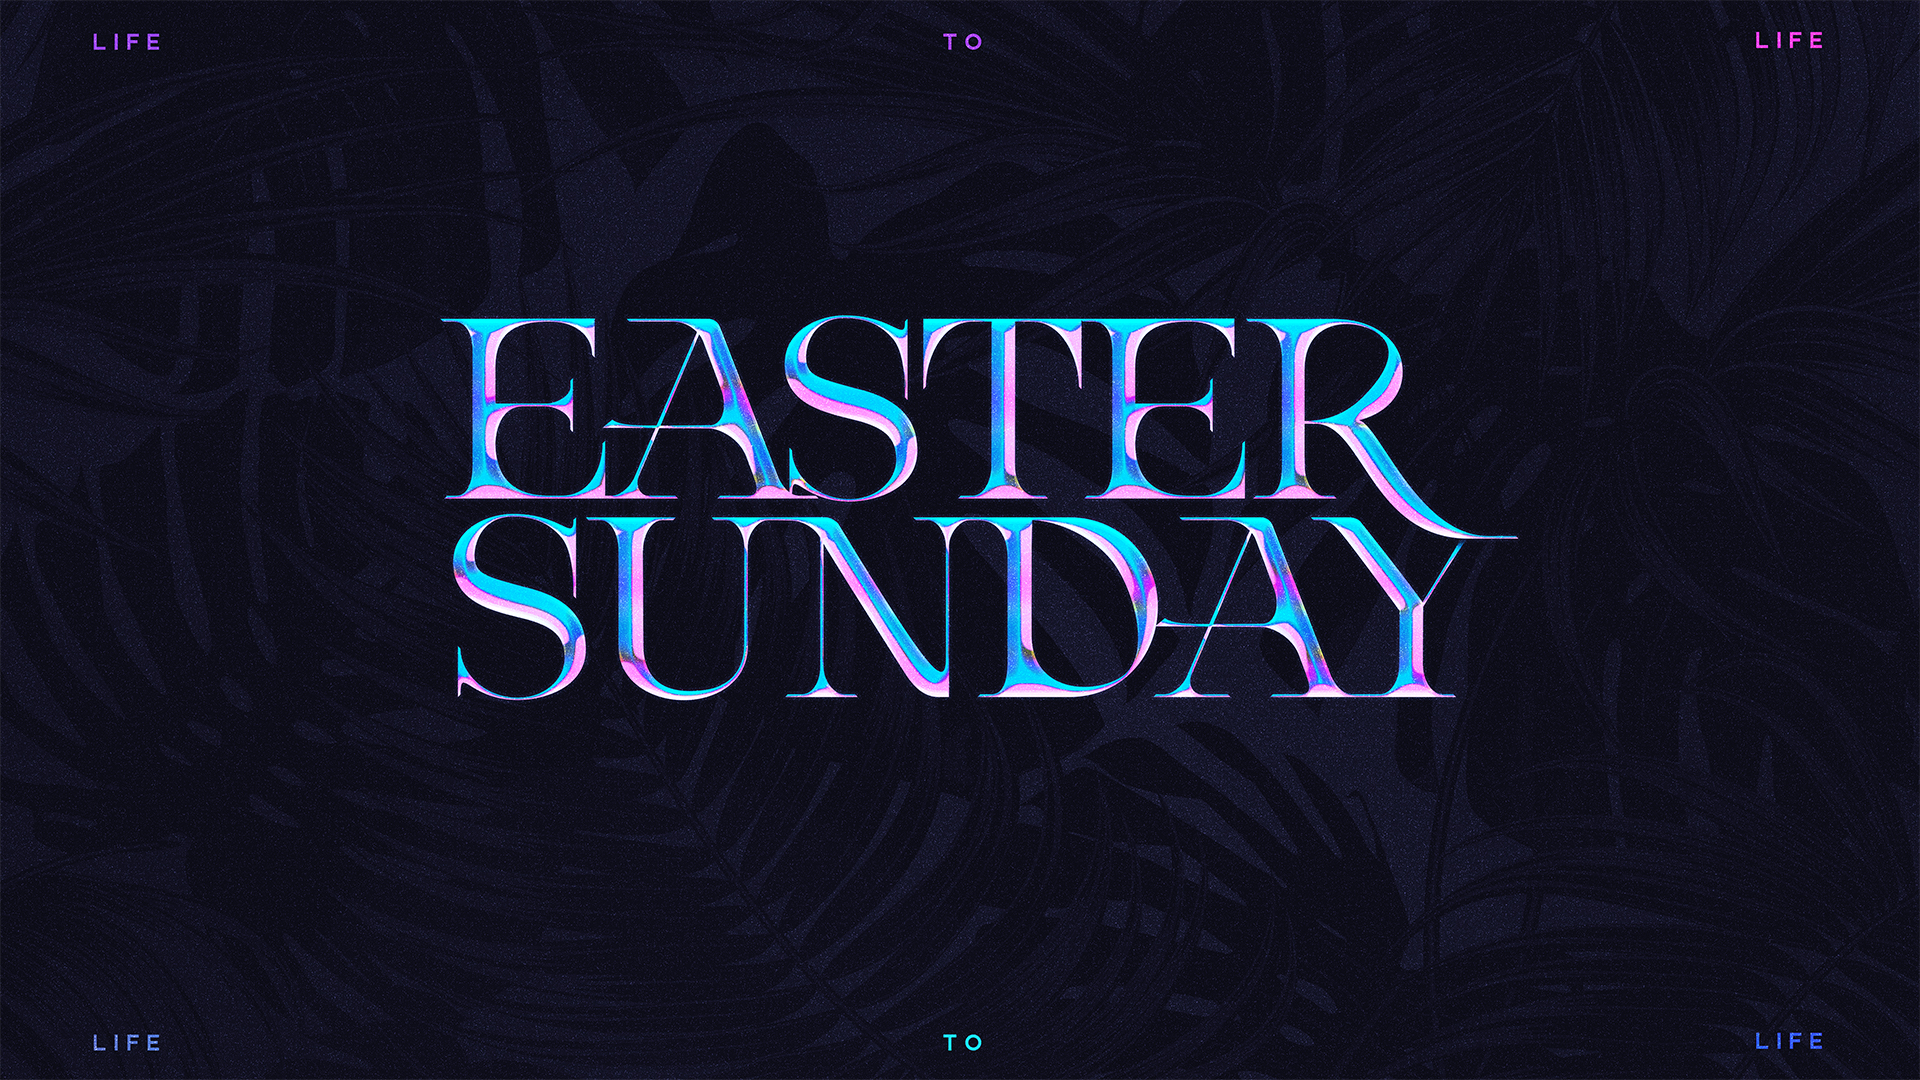 Resurrection Sunday with Richland